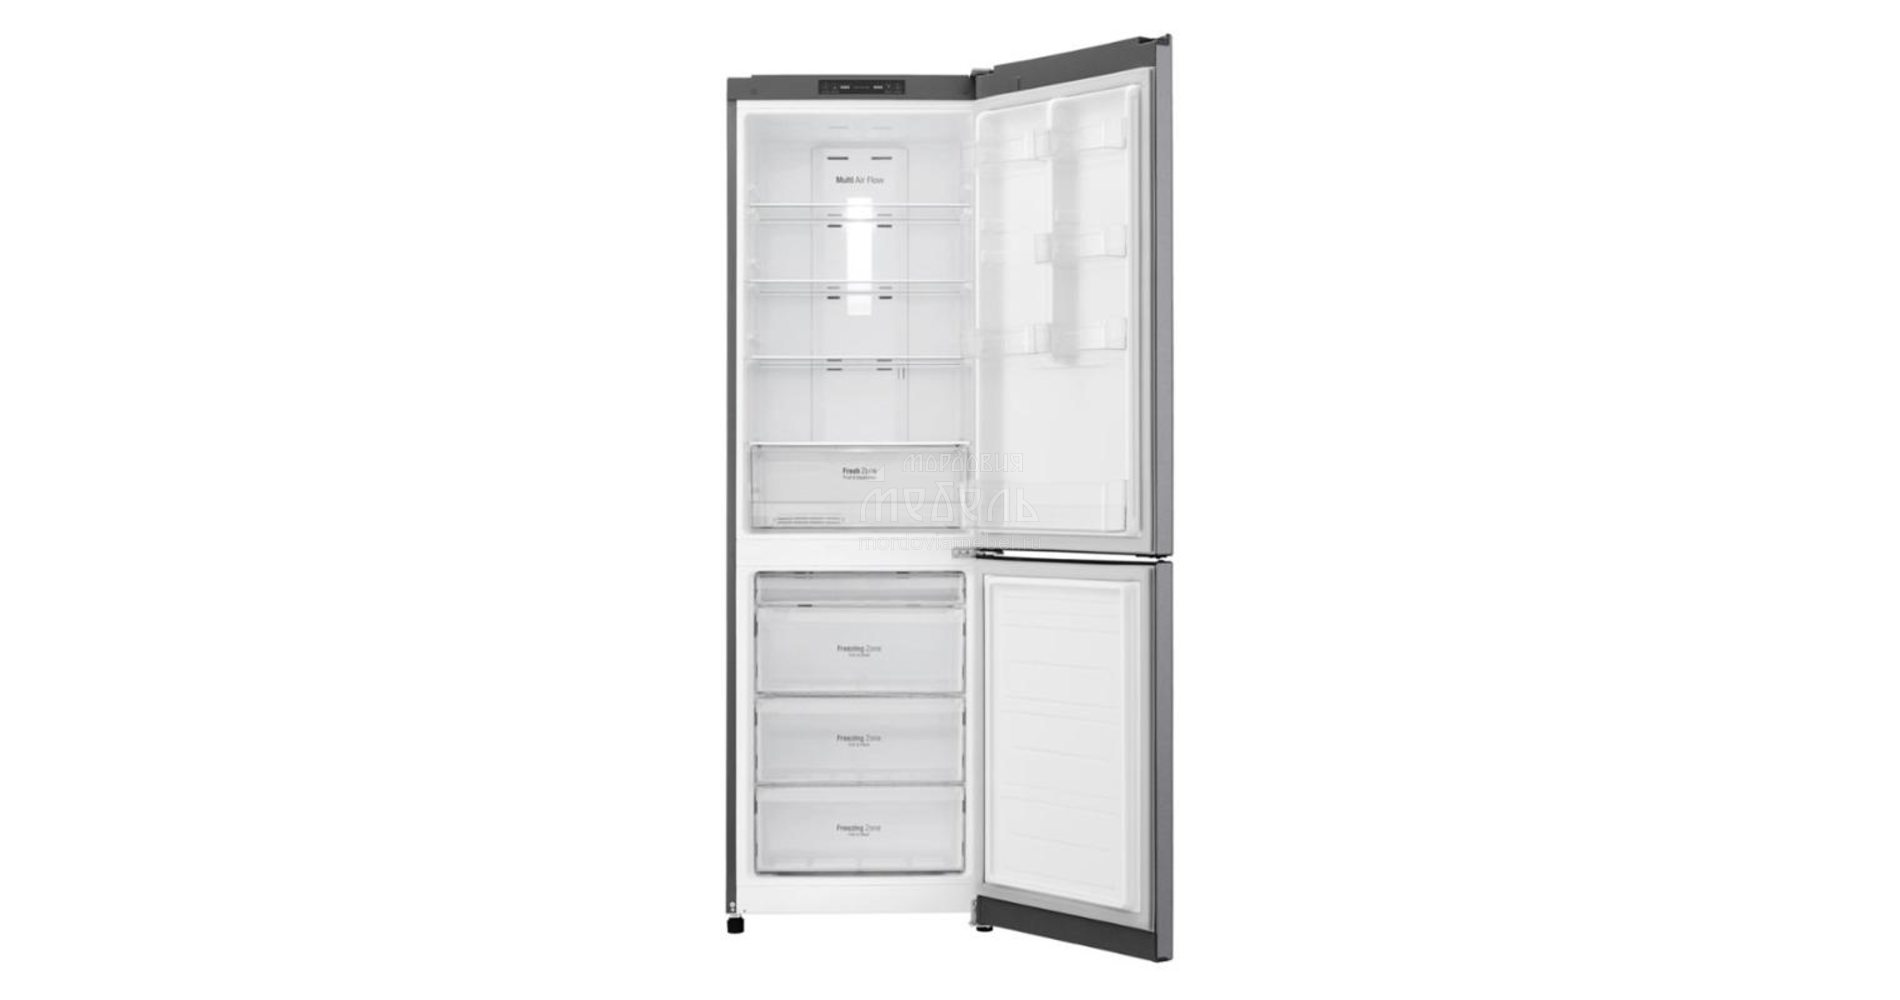 Двухкамерный холодильник lg no frost. Холодильник LG ga-b379slul. Холодильник LG ga-b419sdjl (тёмный графит). Холодильник LG ga-b419sqgl белый. Холодильник LG 419slgl.